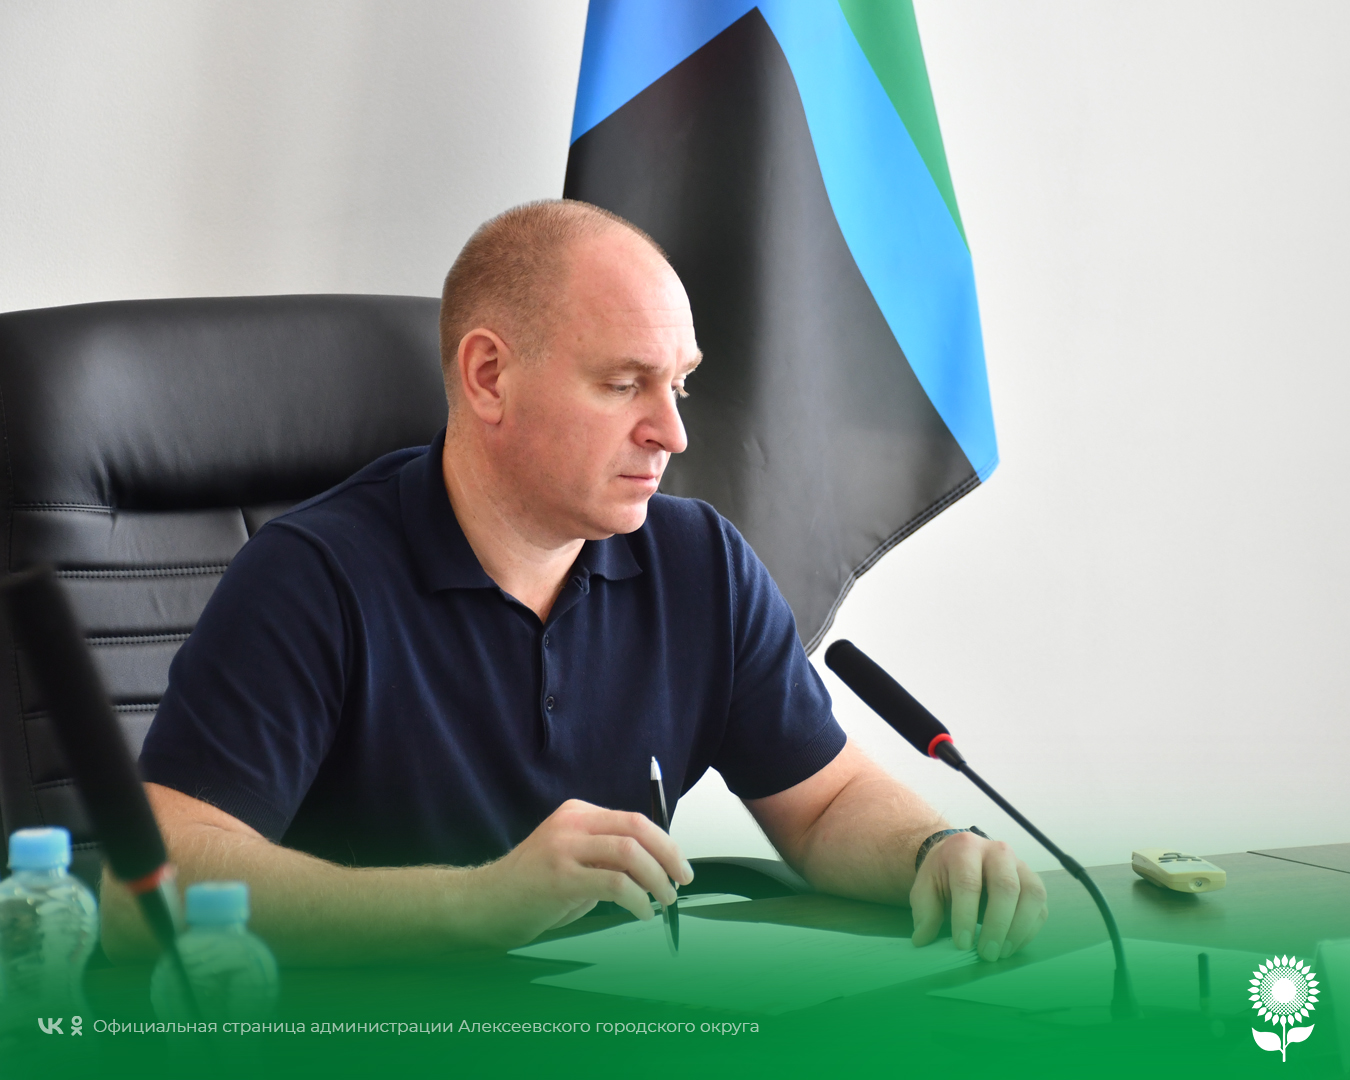 Сегодня глава администрации Алексеевского городского округа Алексей Николаевич Калашников провёл личный приём граждан.